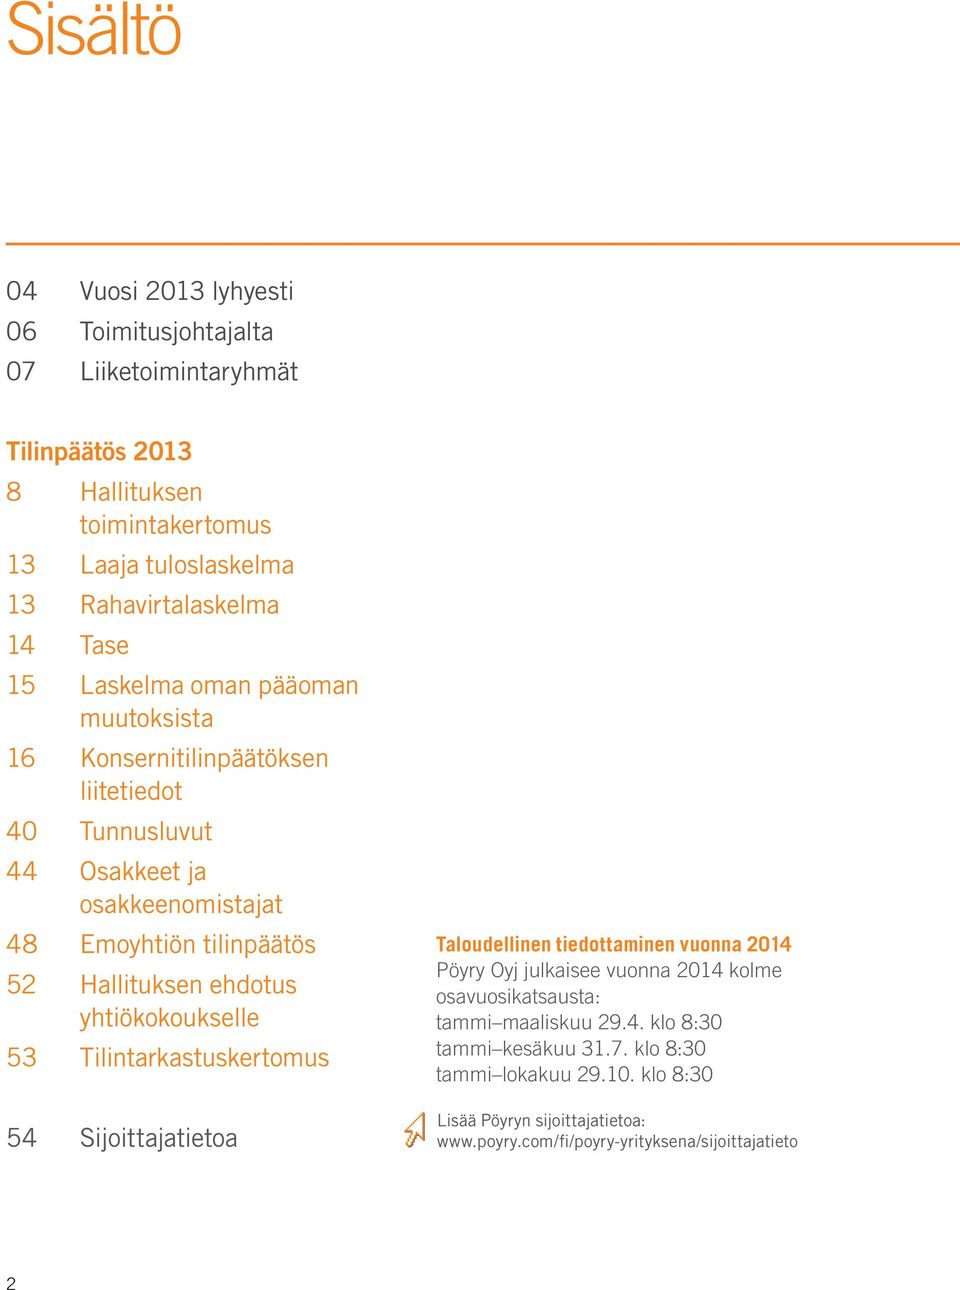 Hallituksen ehdotus yhtiökokoukselle 53 Tilintarkastuskertomus 54 Sijoittajatietoa Taloudellinen tiedottaminen vuonna 2014 Pöyry Oyj julkaisee vuonna 2014 kolme